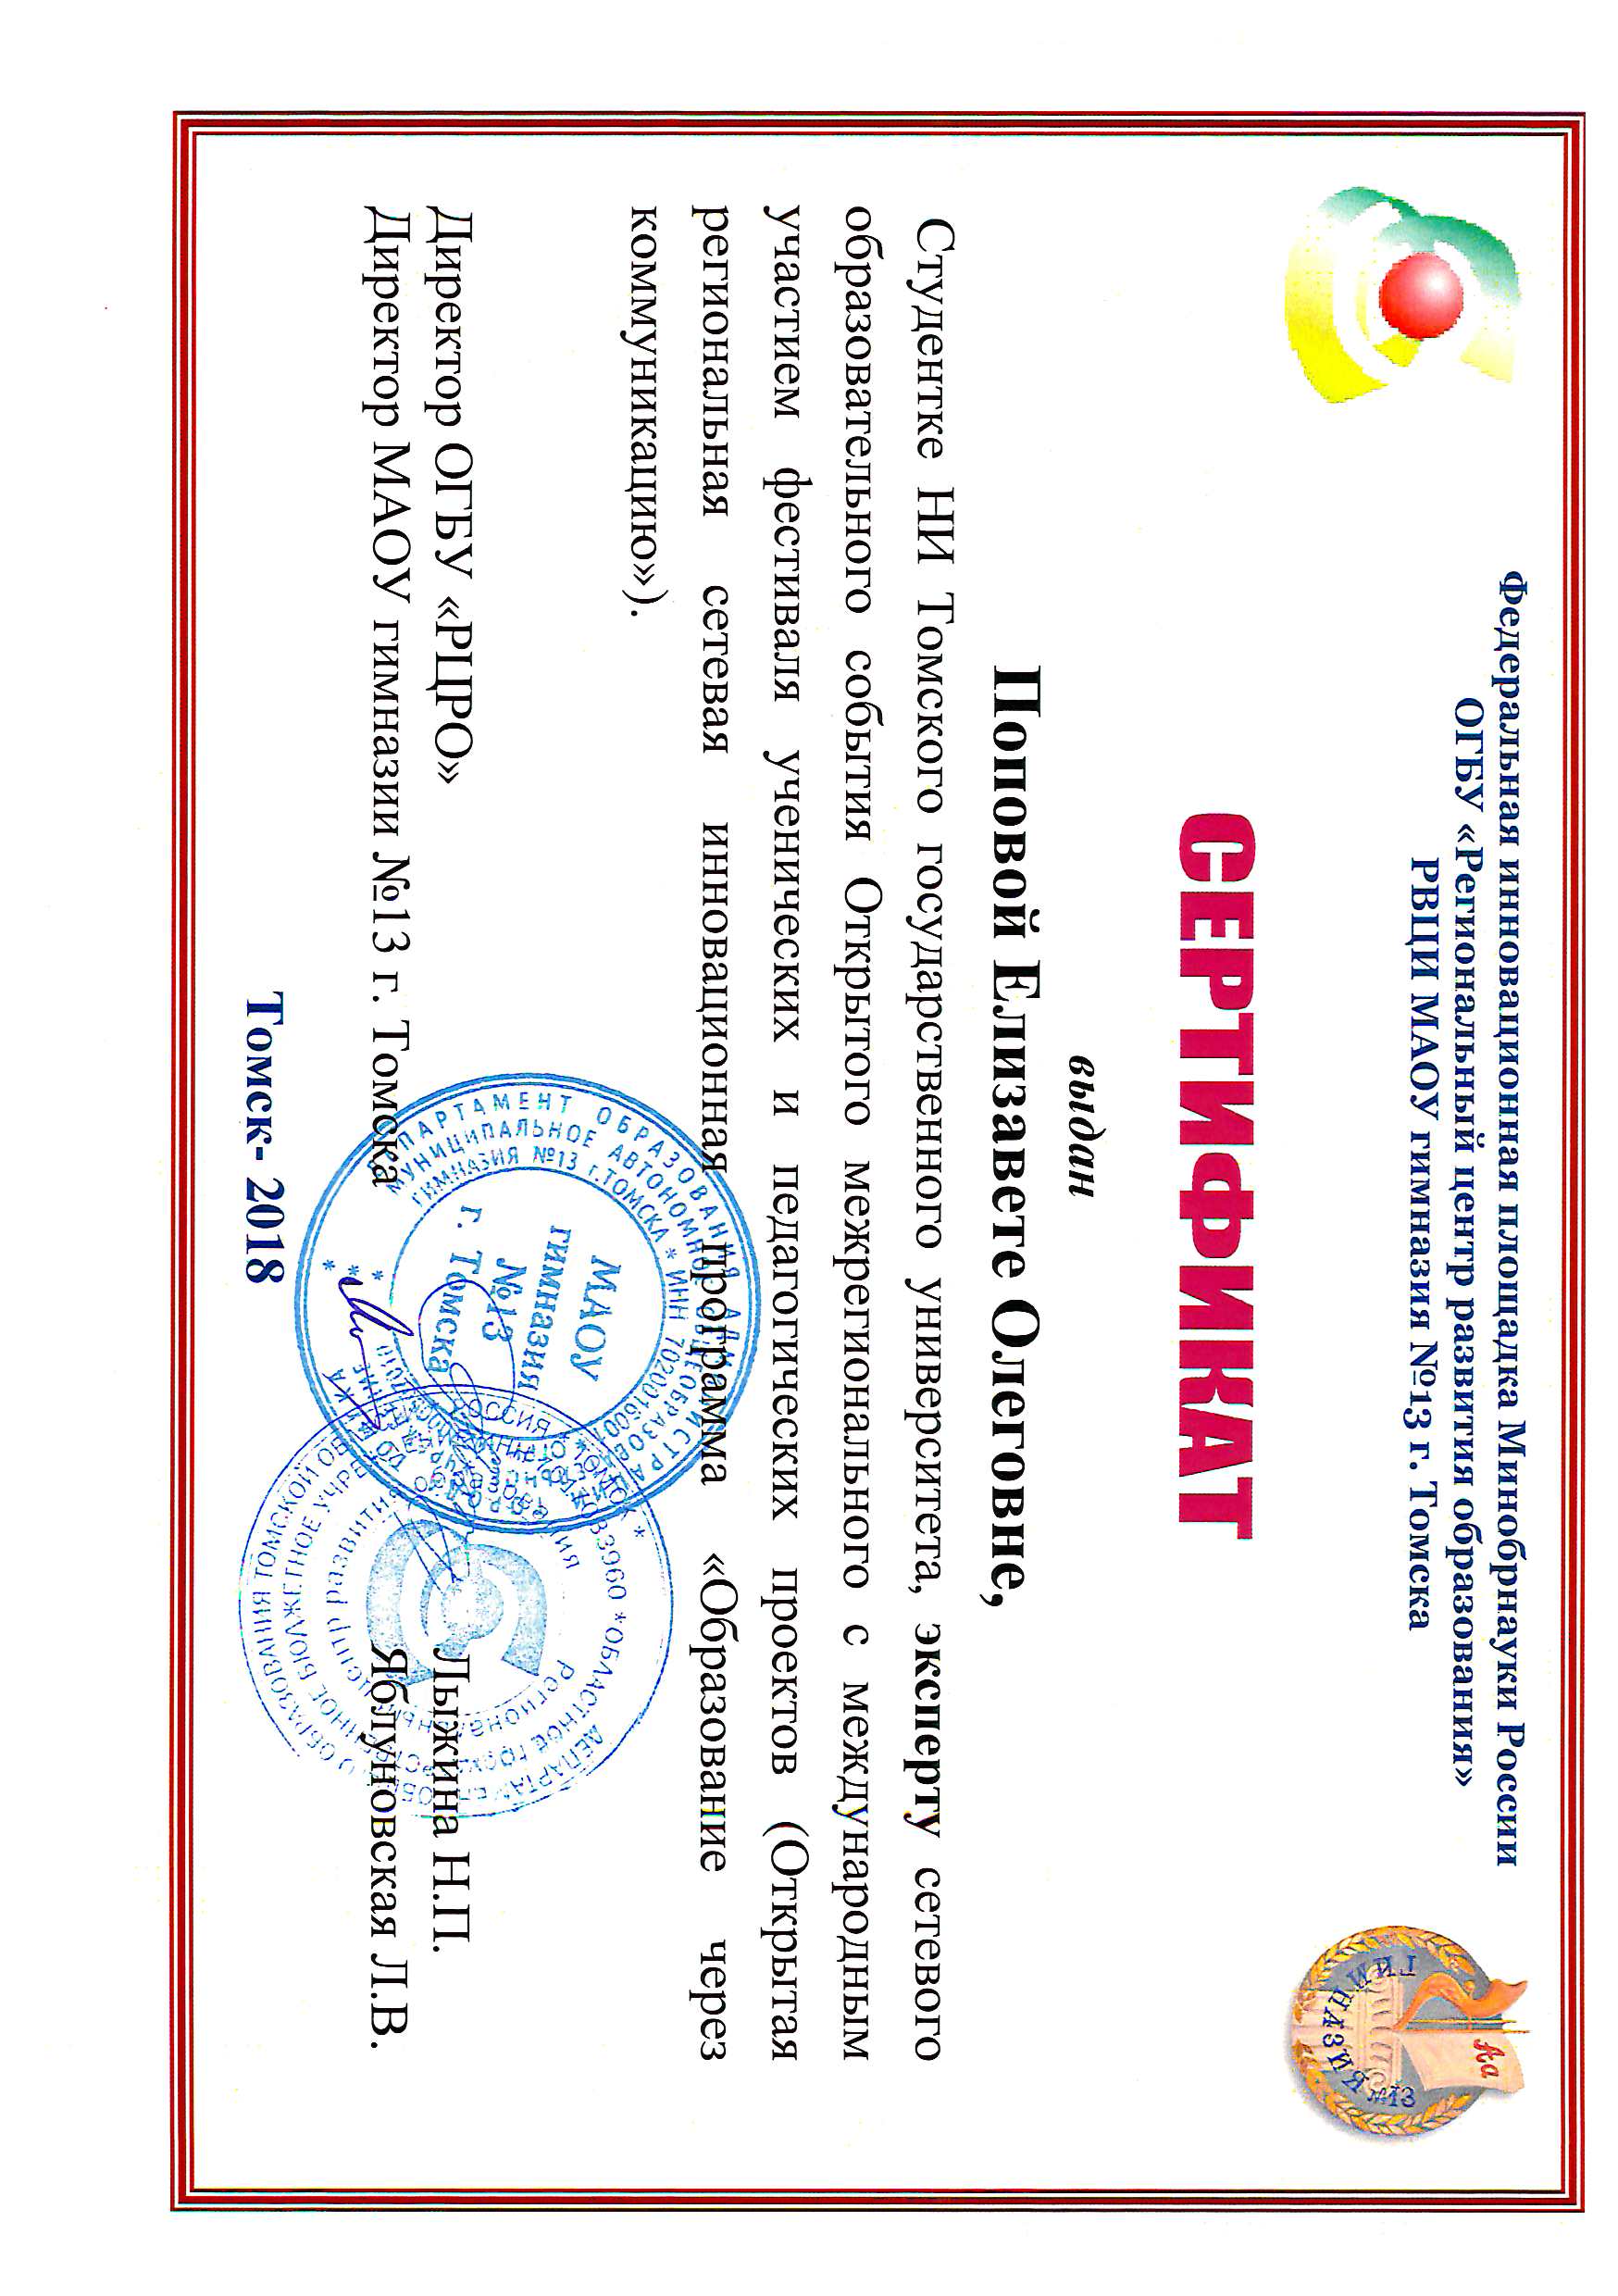 Сертификат Поповой Елизаветы